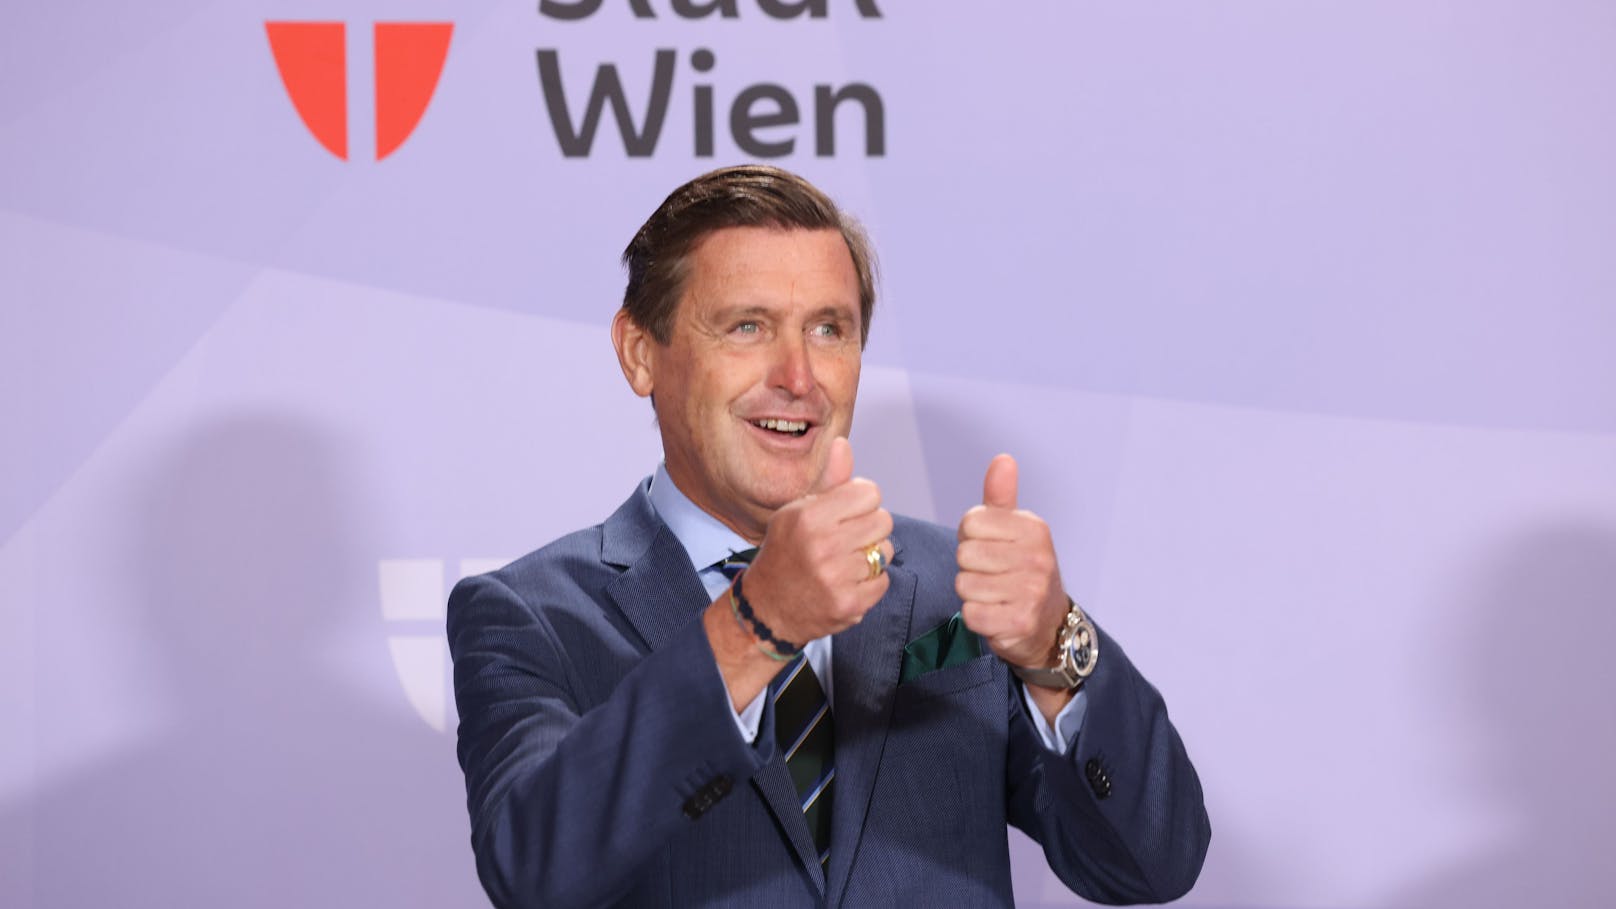 Österreich ächzt, Wien wächst – Konjunktur statt Krise